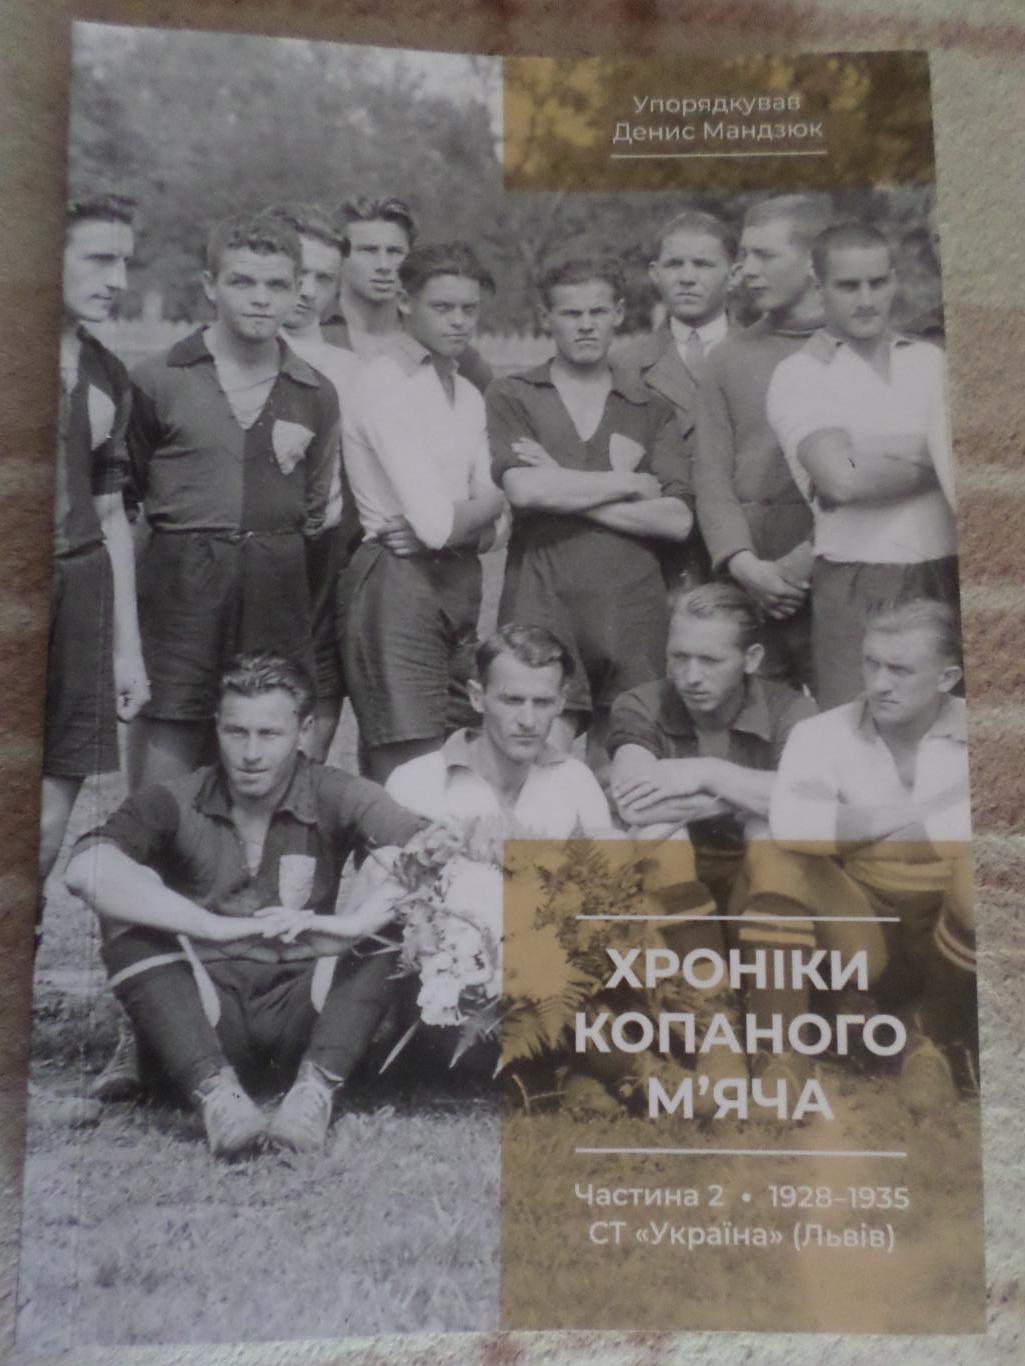 Мандзюк - Хроніки копаного мяча часть 2 1928-1935 гг